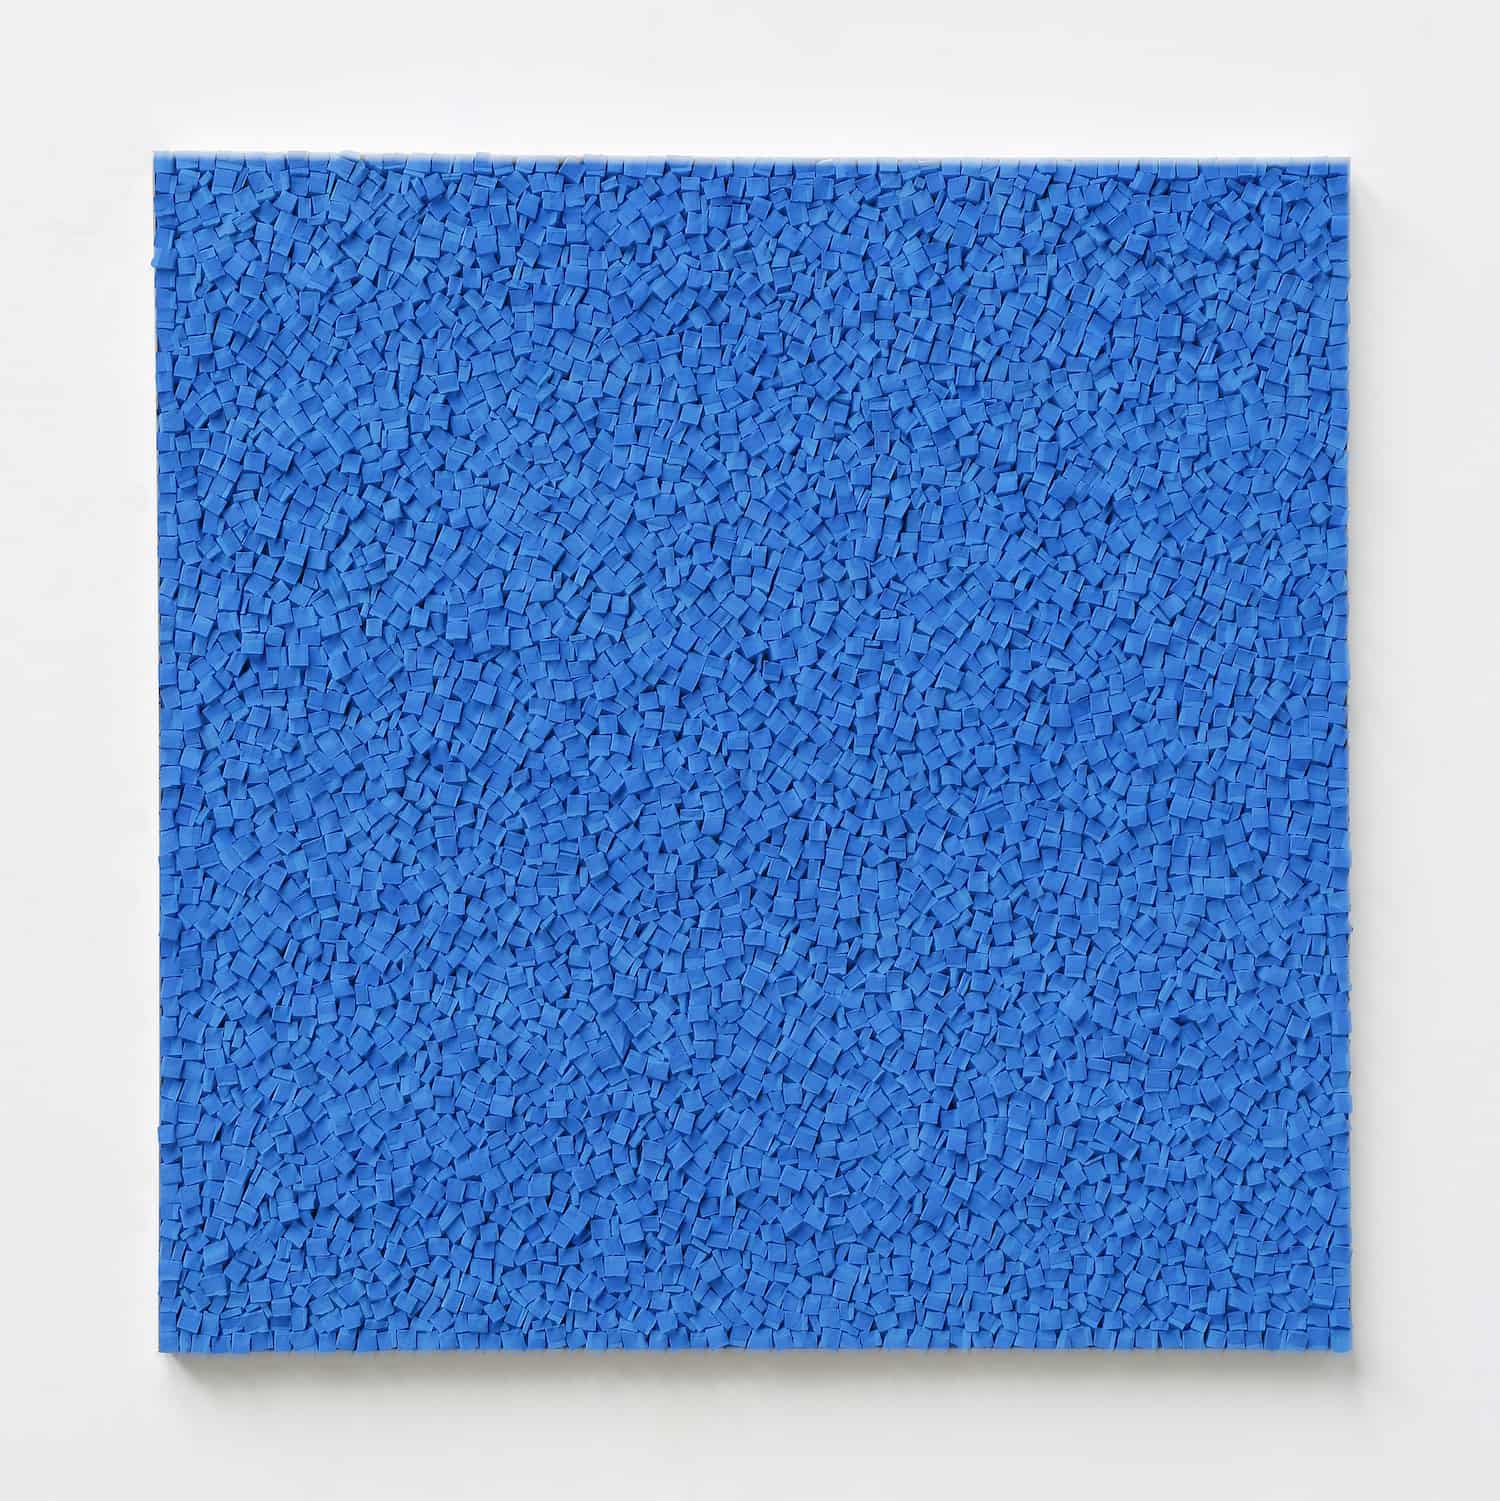 „o. T.“, blaue Kreide, 150 x 150 cm, 2019